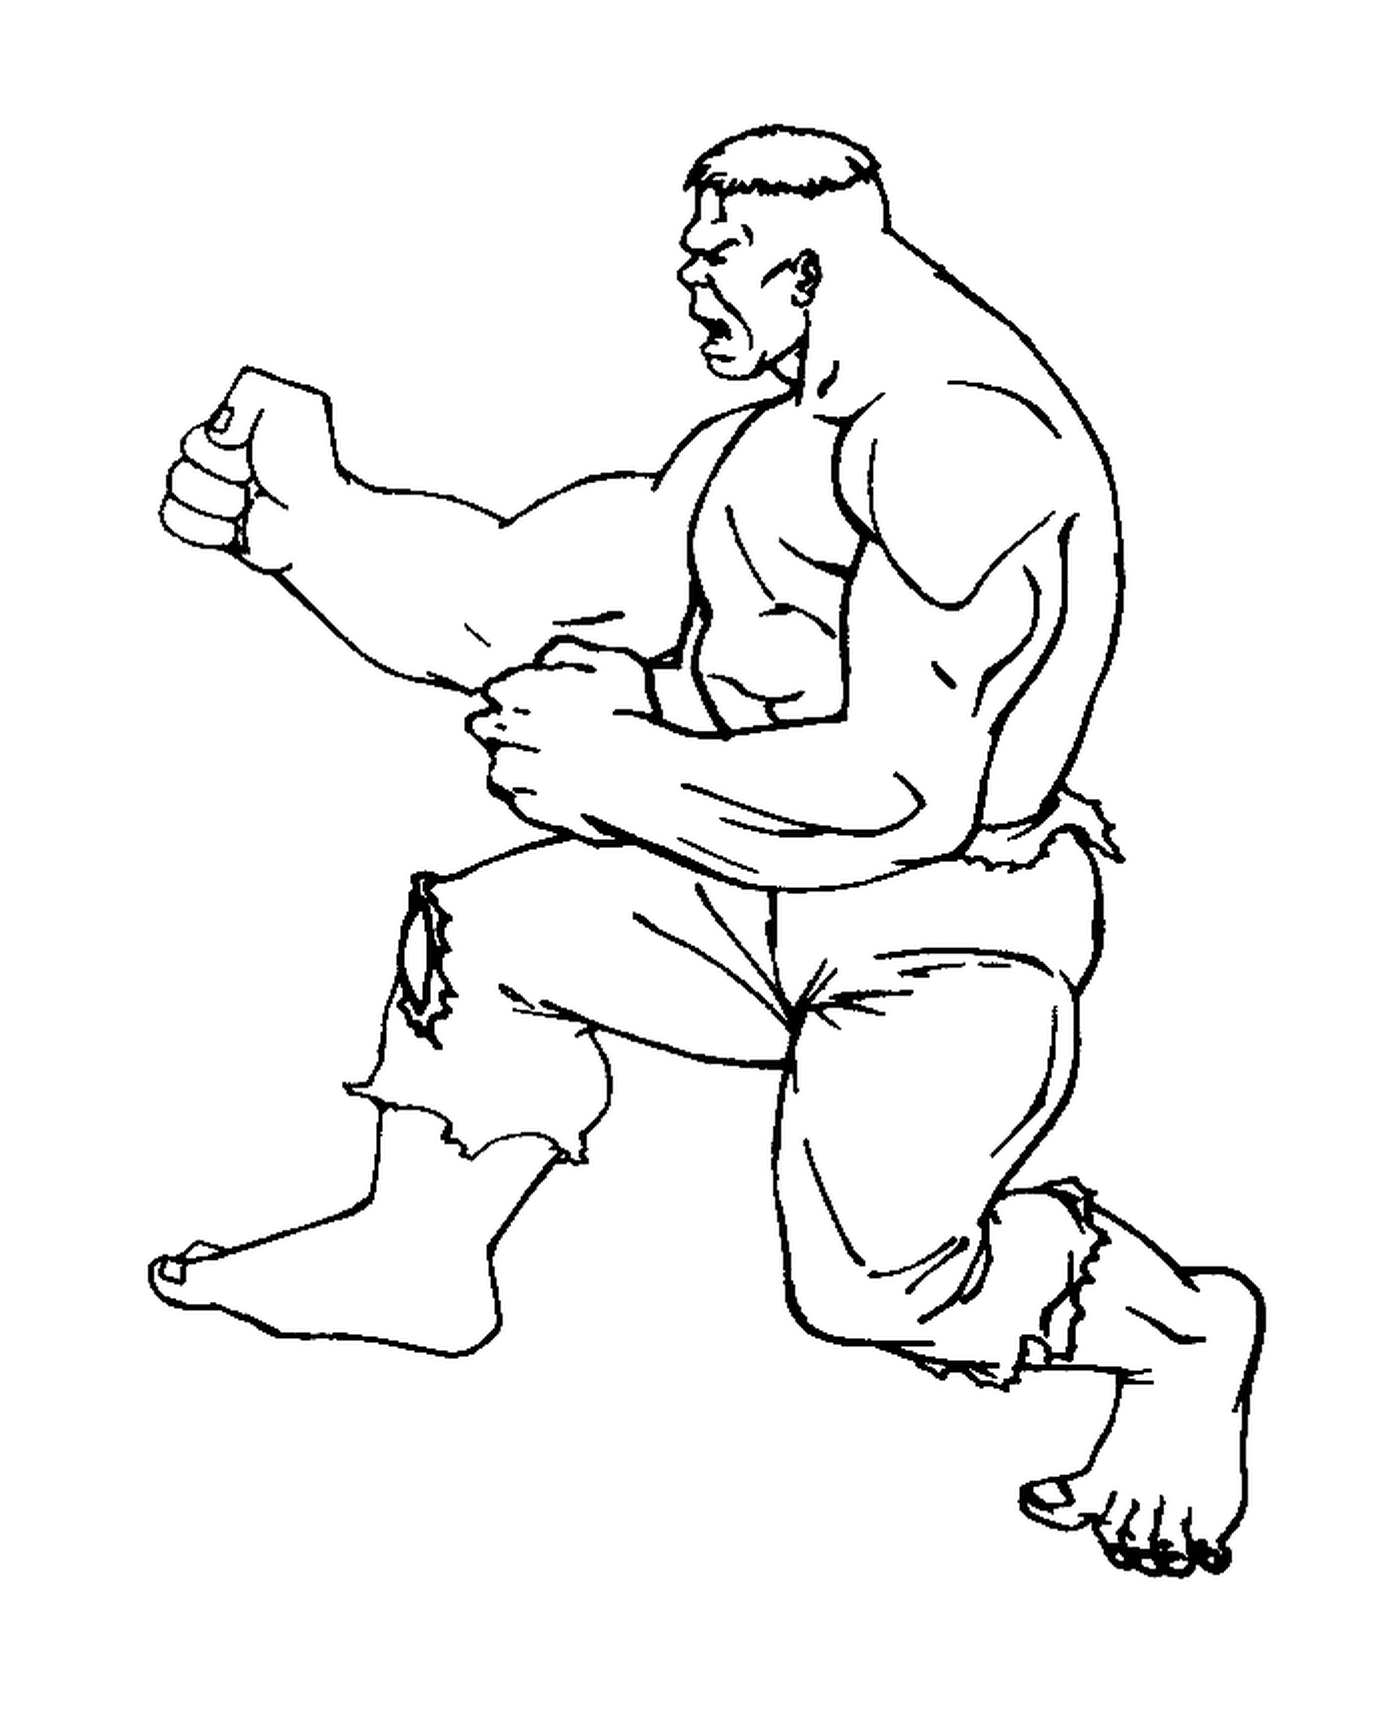  Hulk practicing karate 